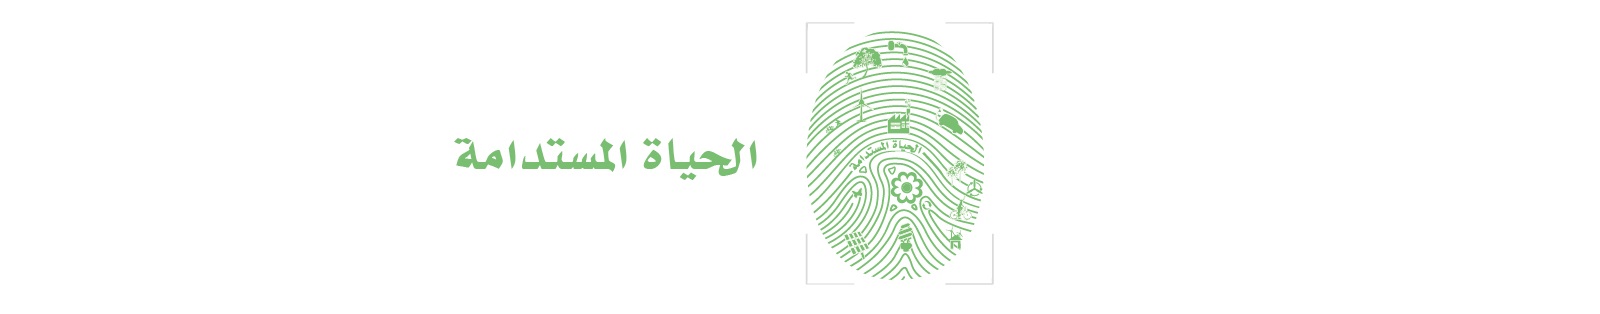 green fingerprint